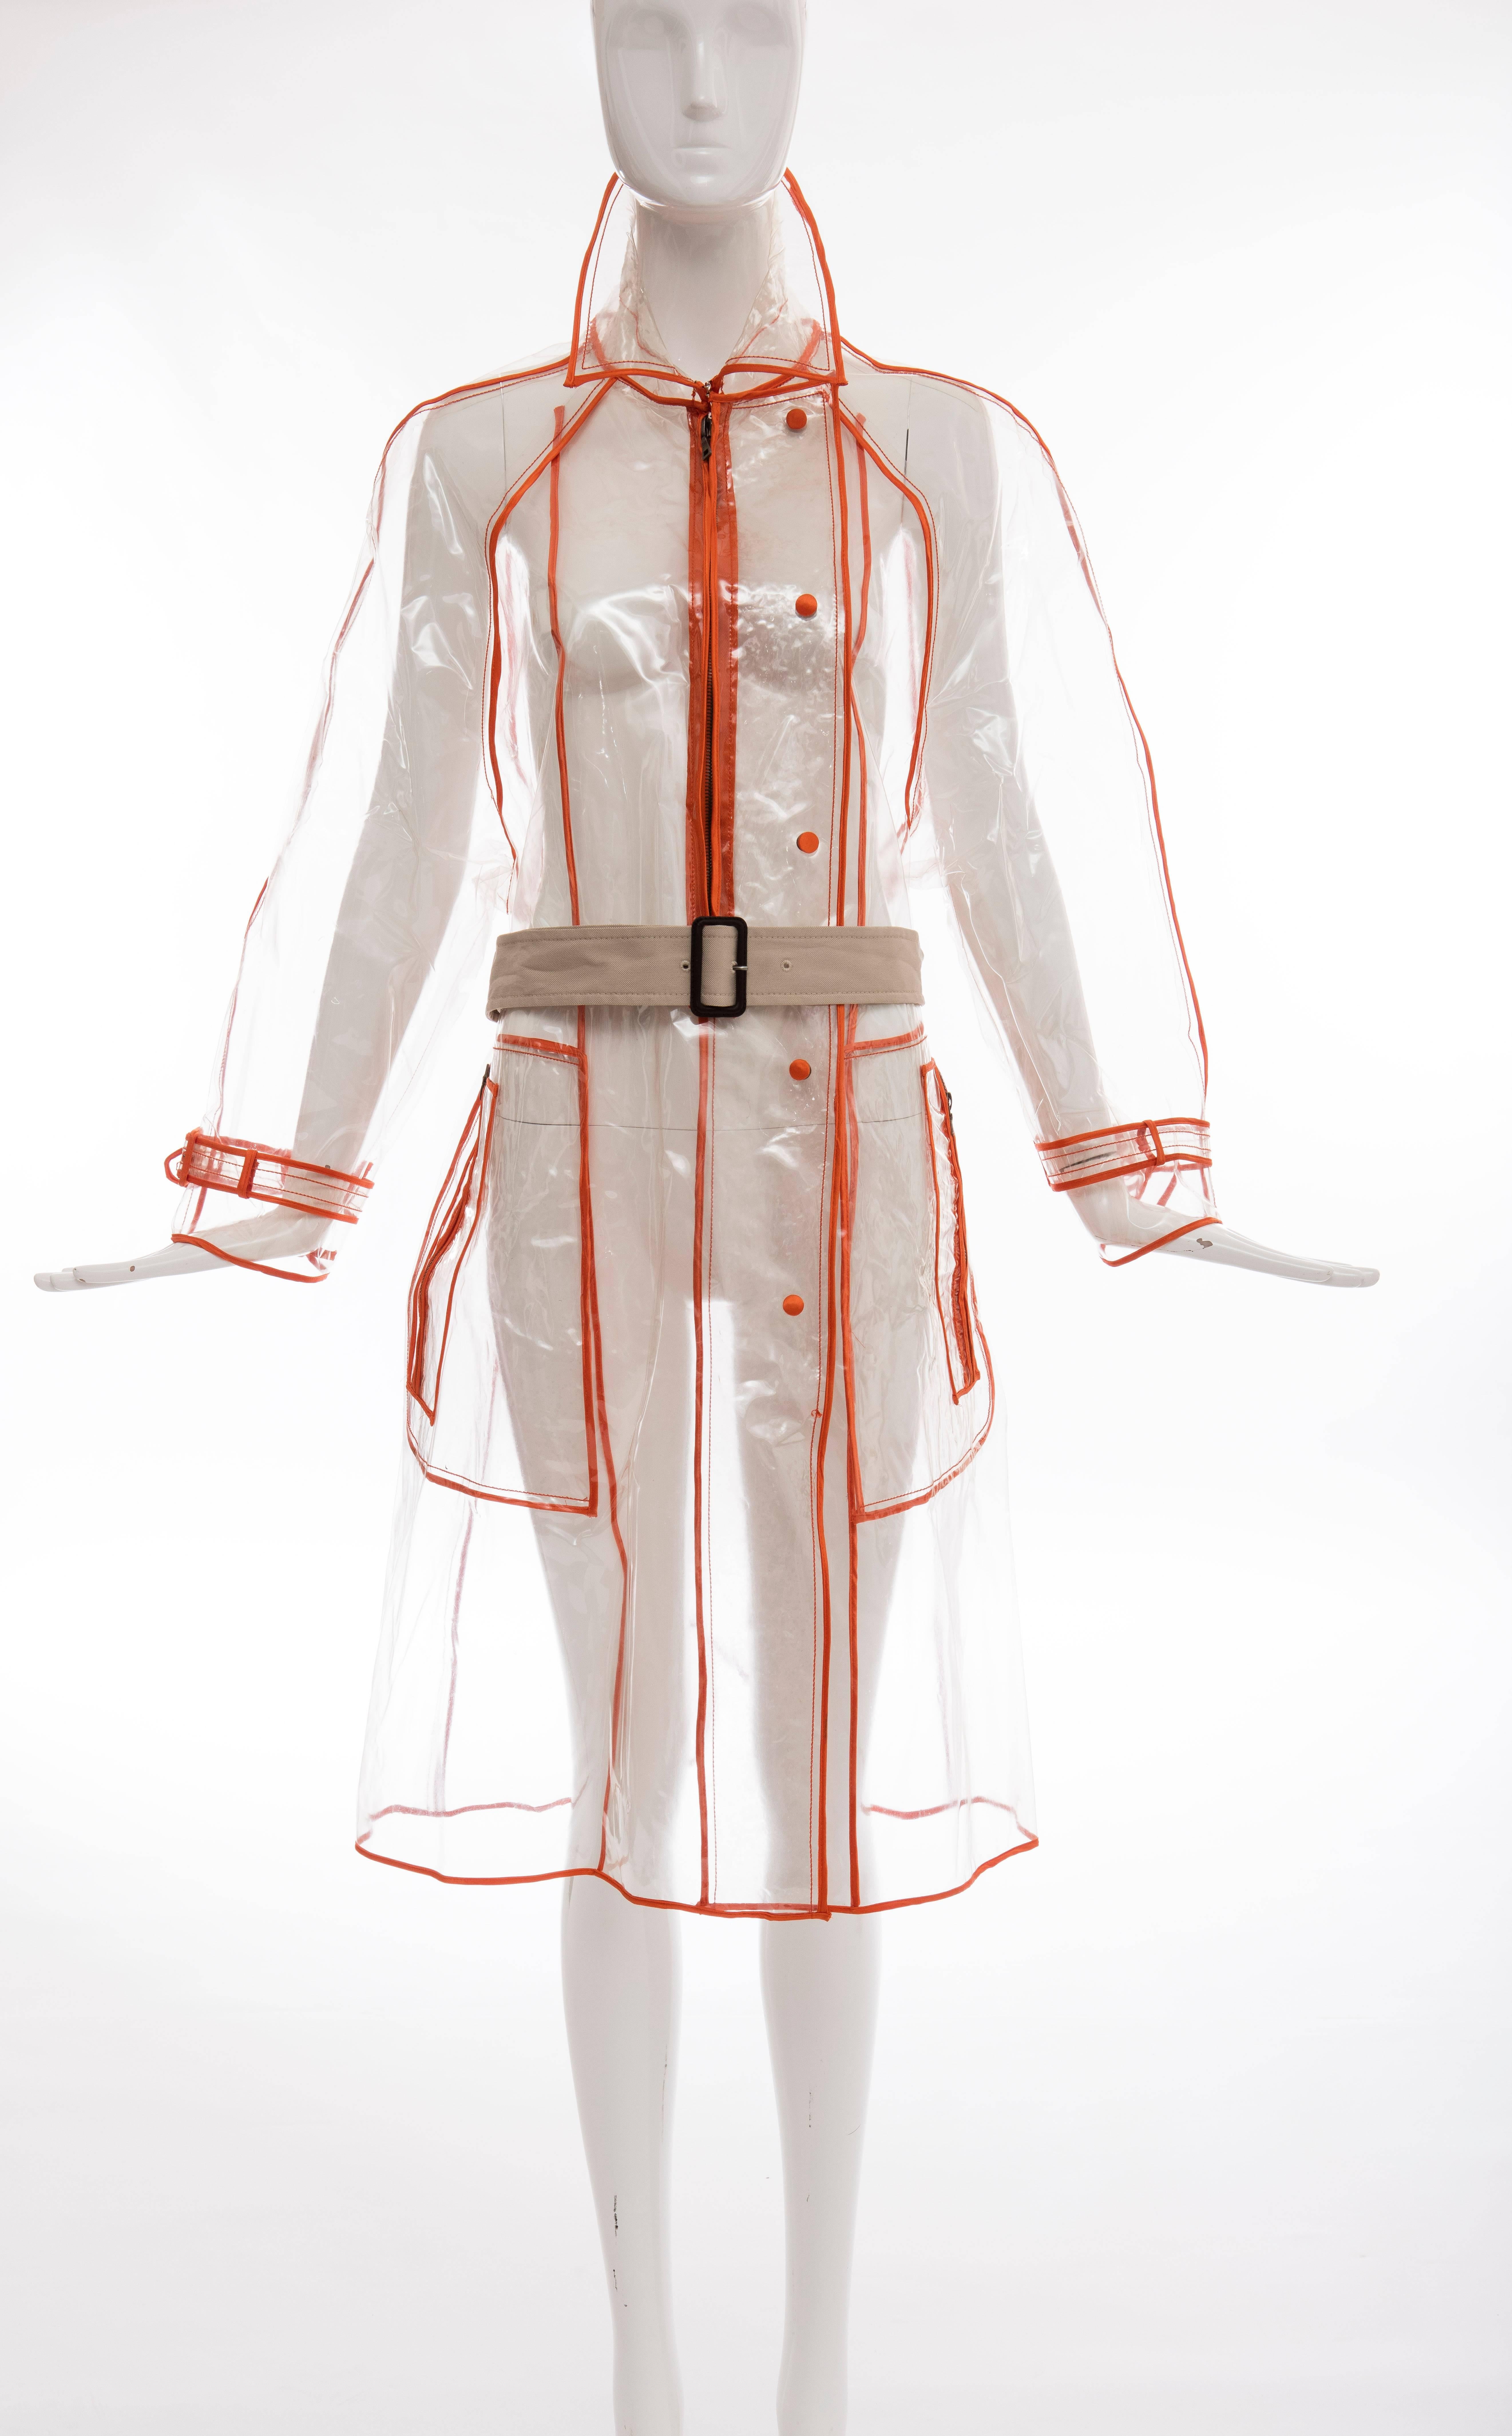 Prada, Herbst - Winter 2002-3, transparenter PVC-Regenmantel mit spitzem Kragen, langen Ärmeln, zwei seitlichen Reißverschlusstaschen, Gürtel in der Taille, kontrastierendem orangefarbenem Besatz und Druckknopf- und Reißverschlussverschlüssen vorne.